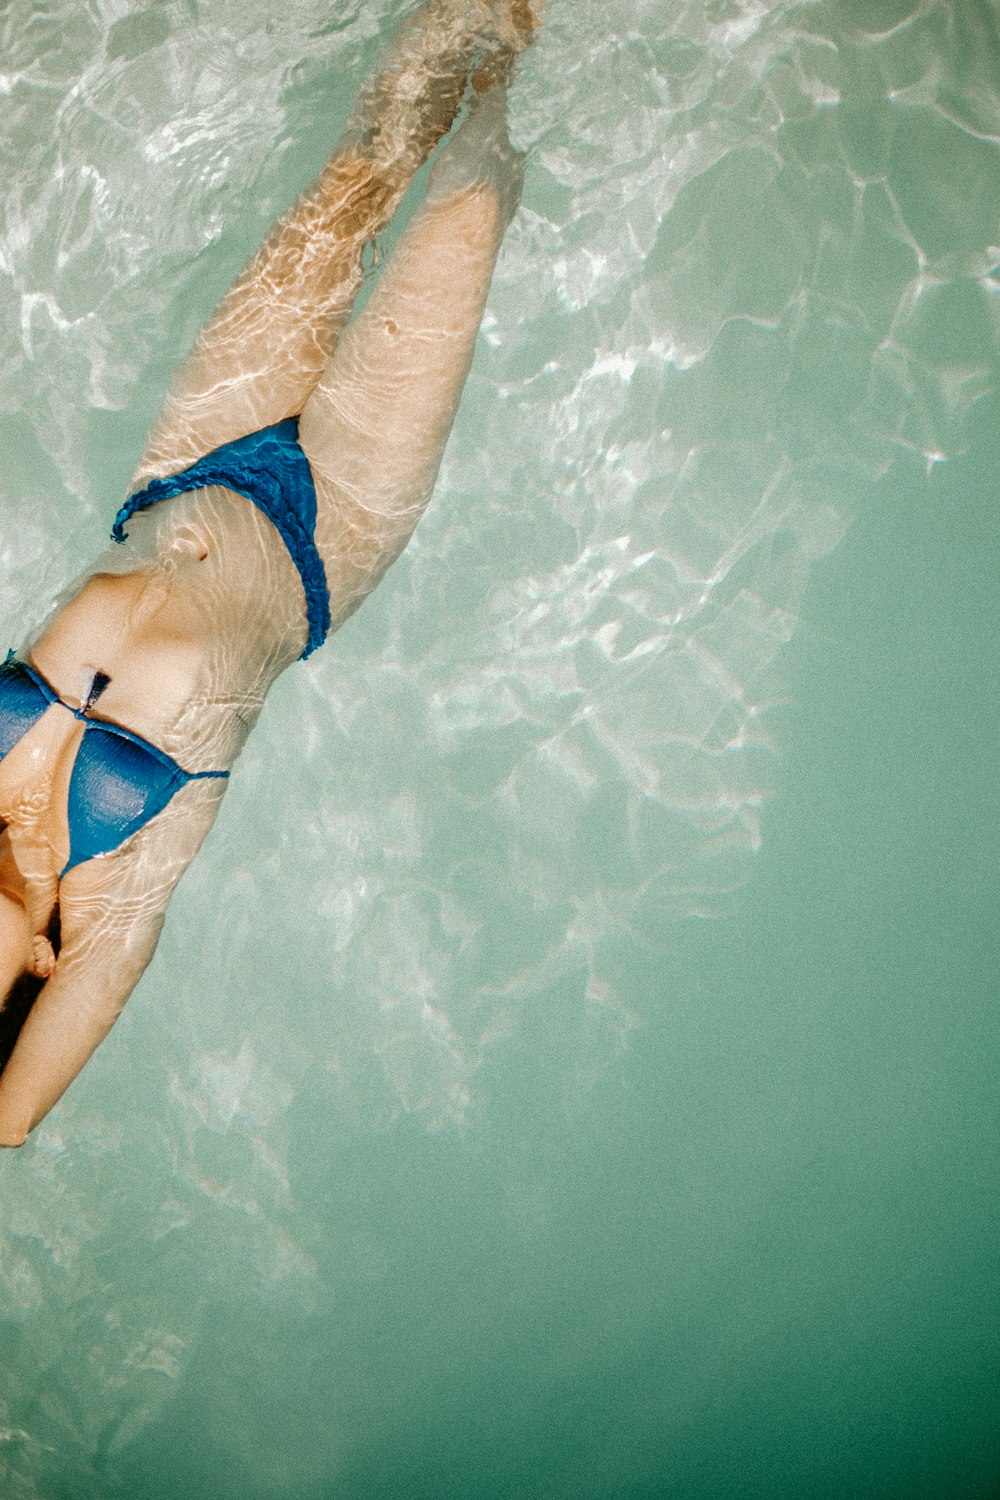 a woman in a blue bikini swimming in a pool